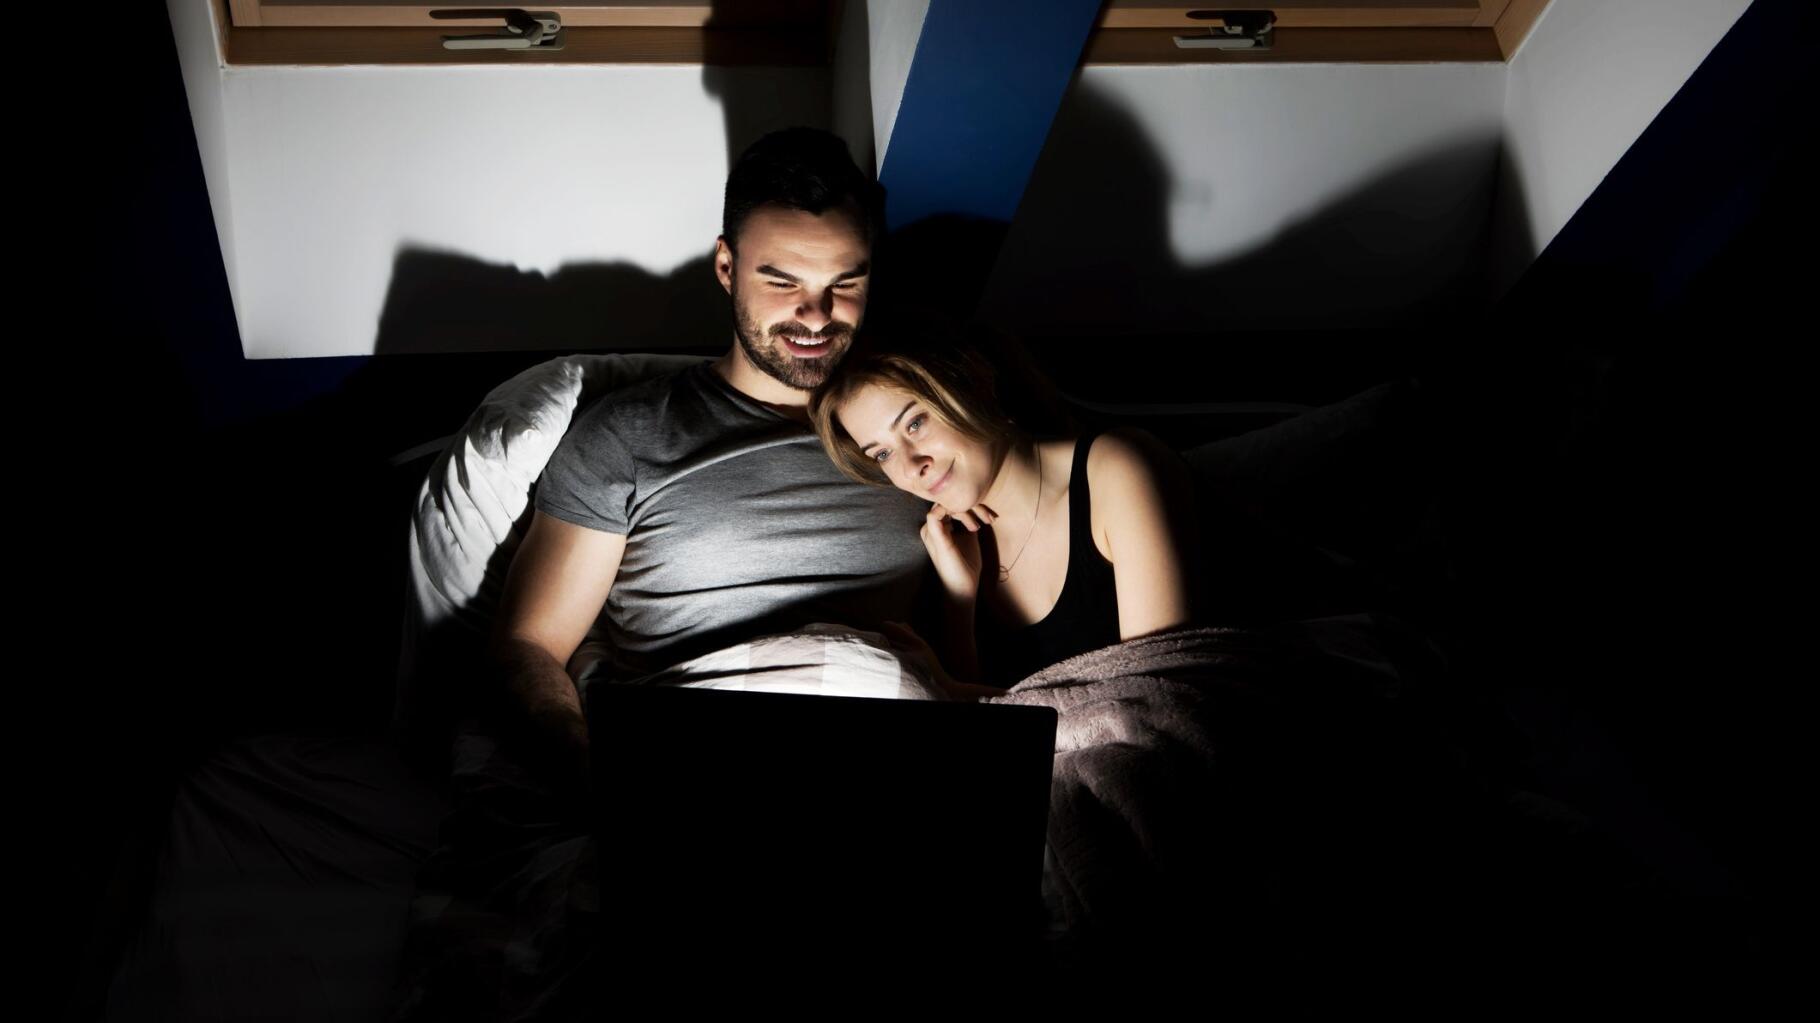 Regarder du porno en couple, une habitude qui peut ressouder une relation photo